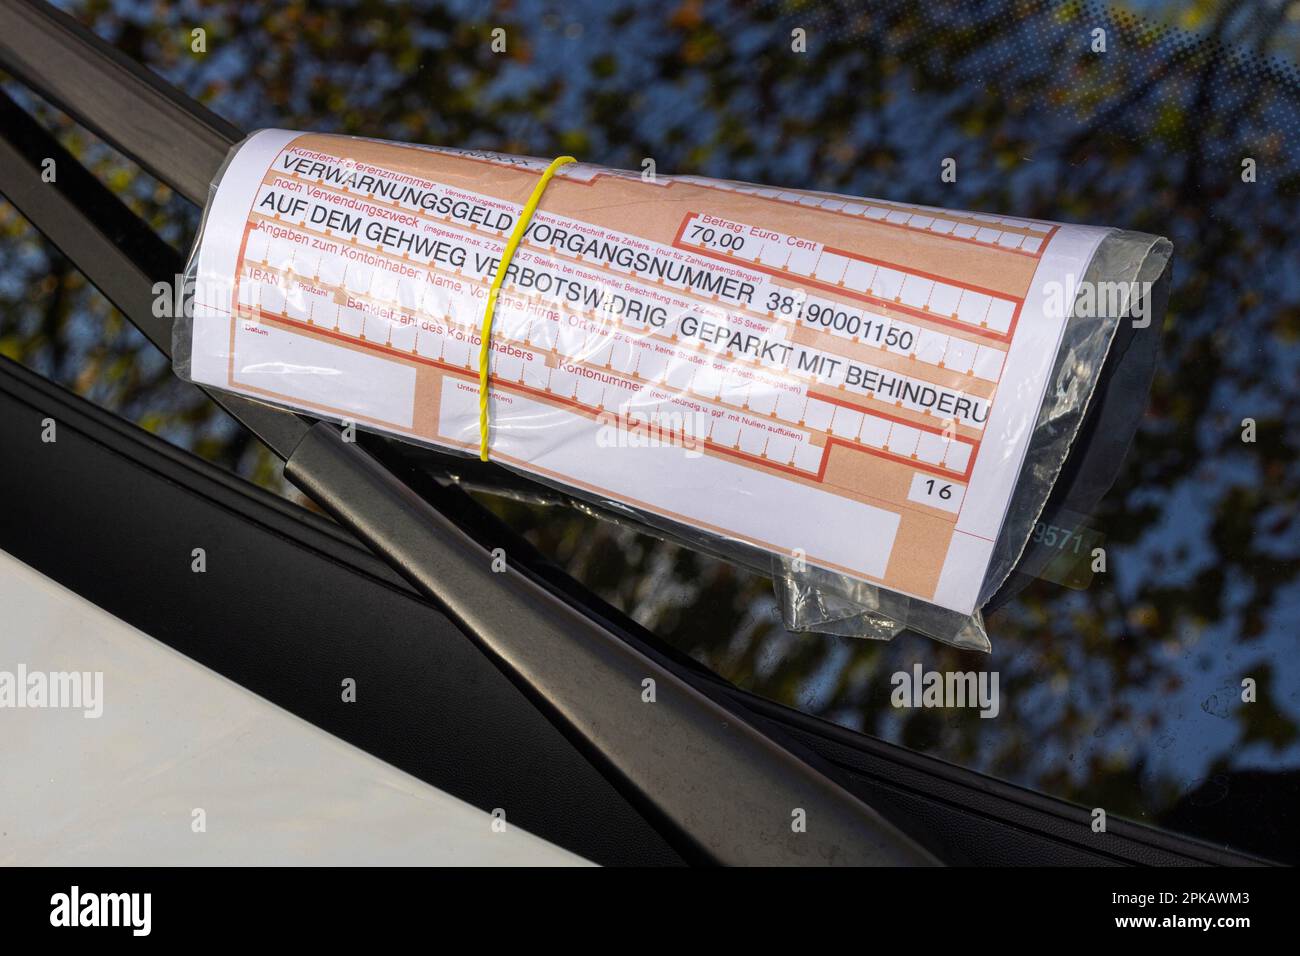 Demande de paiement sur le pare-brise d'une voiture, billet de parking pour le stationnement illégal sur le trottoir avec obstruction, 70, 00 euros, image de symbole, Wilhelmshaven, Basse-Saxe, Allemagne Banque D'Images